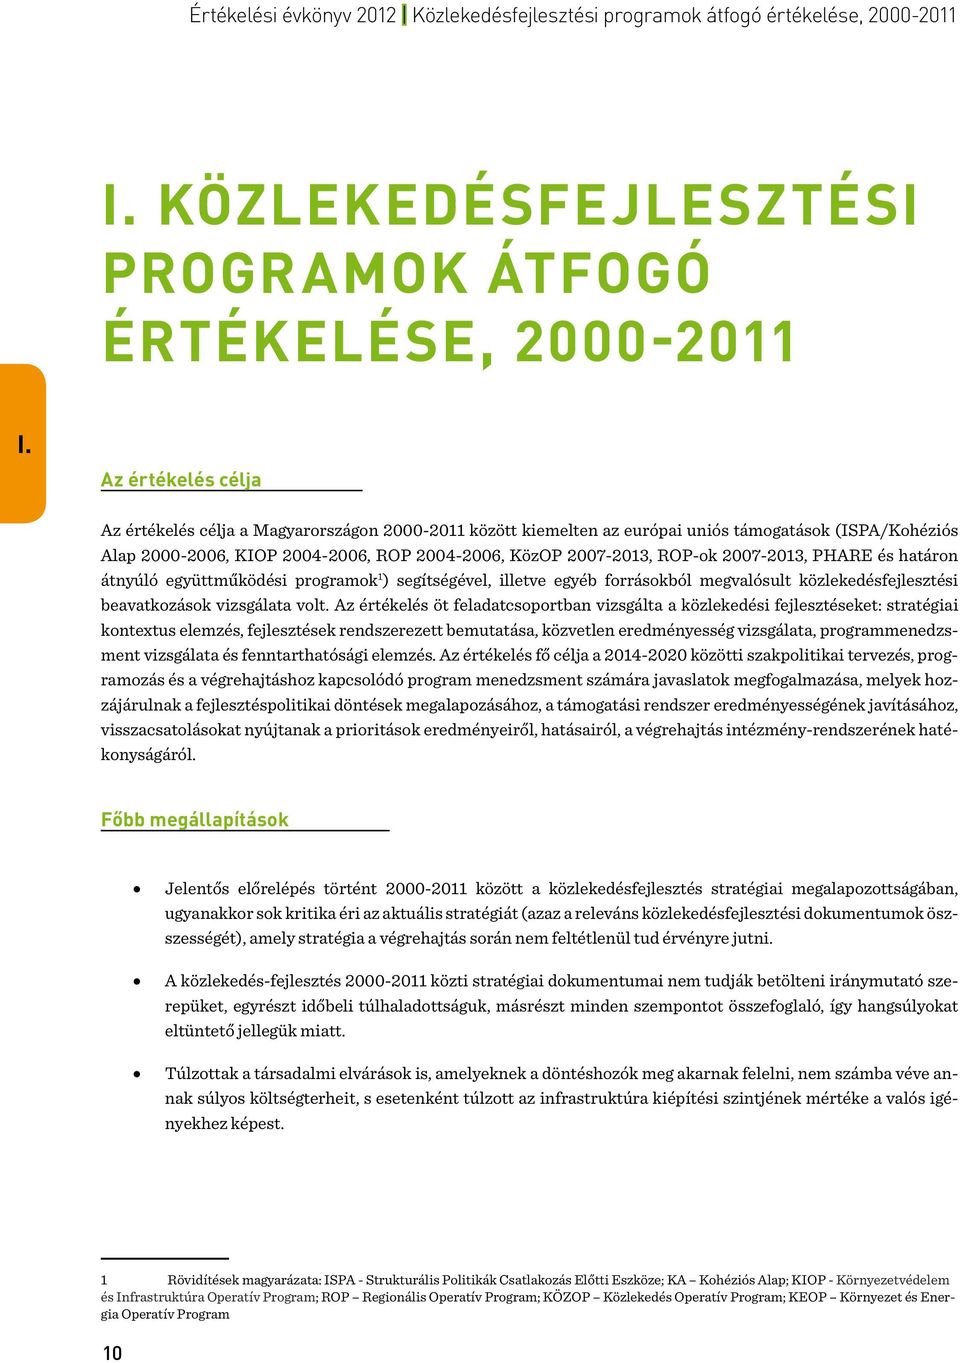 Az értékelés célja Az értékelés célja a Magyarországon 2000-2011 között kiemelten az európai uniós támogatások (ISPA/Kohéziós Alap 2000-2006, KIOP 2004-2006, ROP 2004-2006, KözOP 2007-2013, ROP-ok